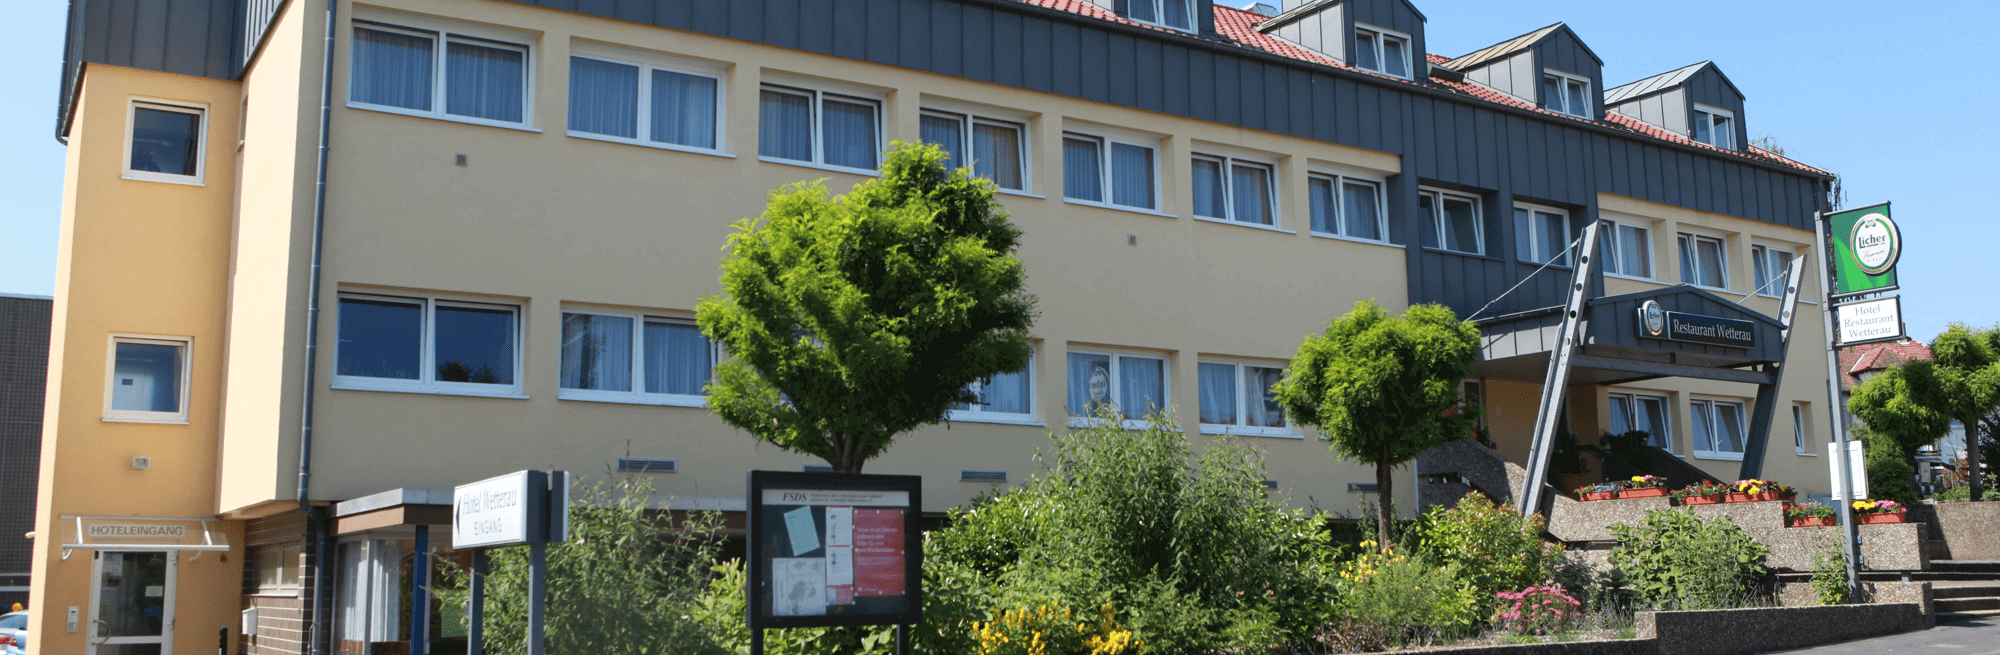 Hotel & Restaurant Wetterau in Wölfersheim bei Münzenberg